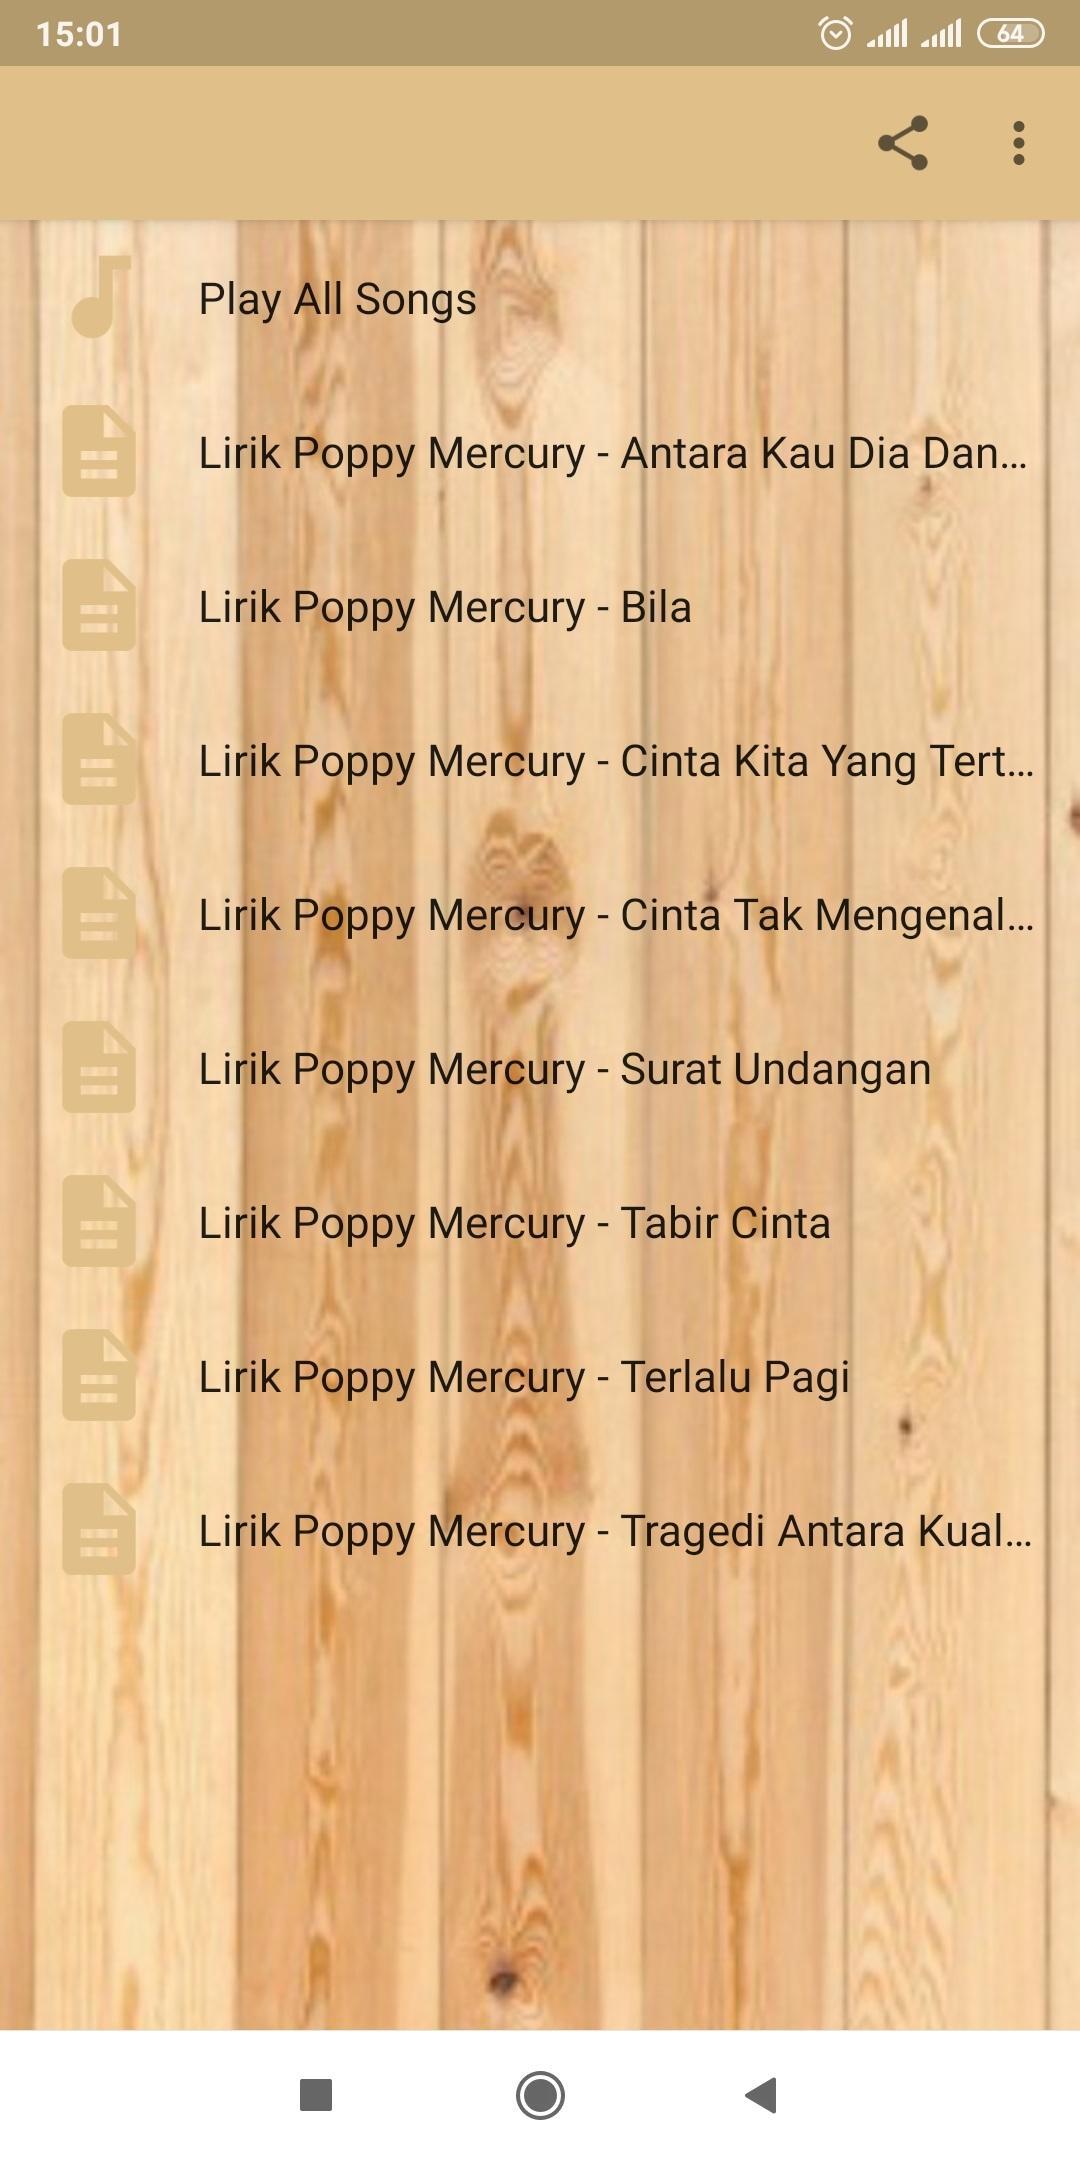 Lagu Poppy Mercury Surat Undangan Offline Mp3 For Android Apk Download